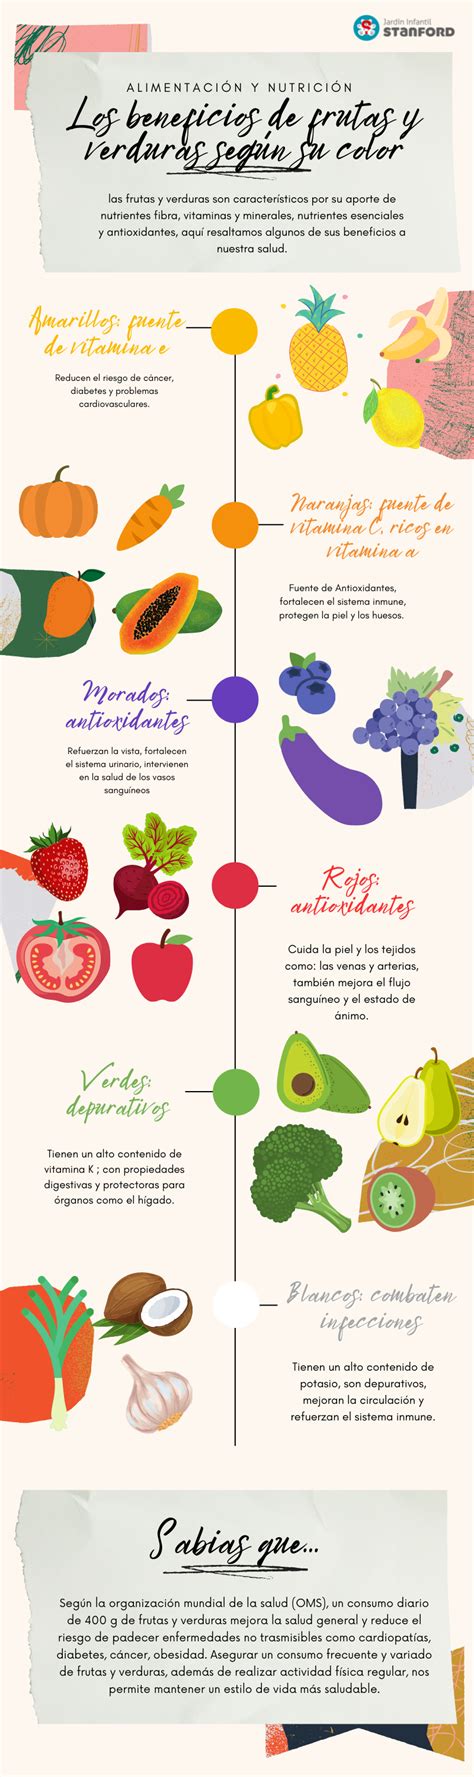 Los beneficios de frutas y verduras según su color